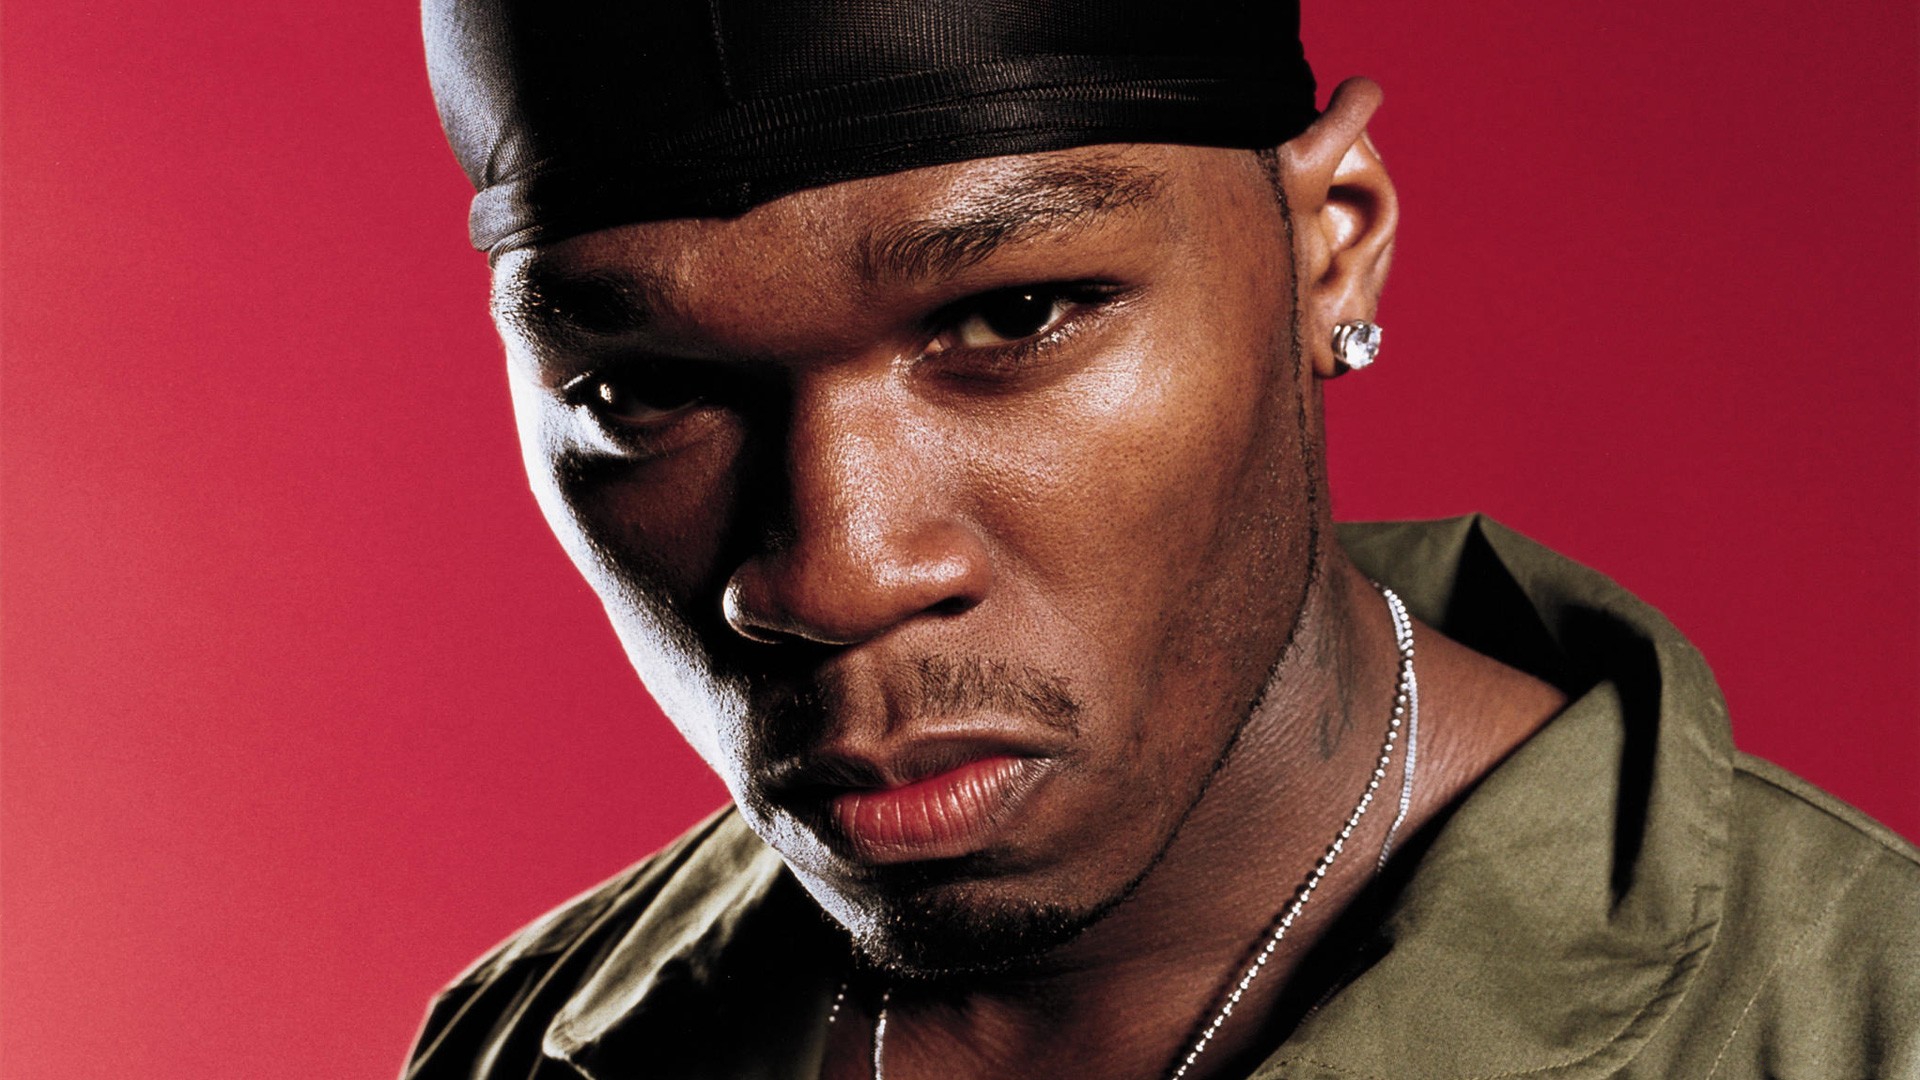 Песня черный рэп. Рэпер 50 Cent. 50 Цент рэпер. Дюраг 50 Cent. 50 Сент Кертис.